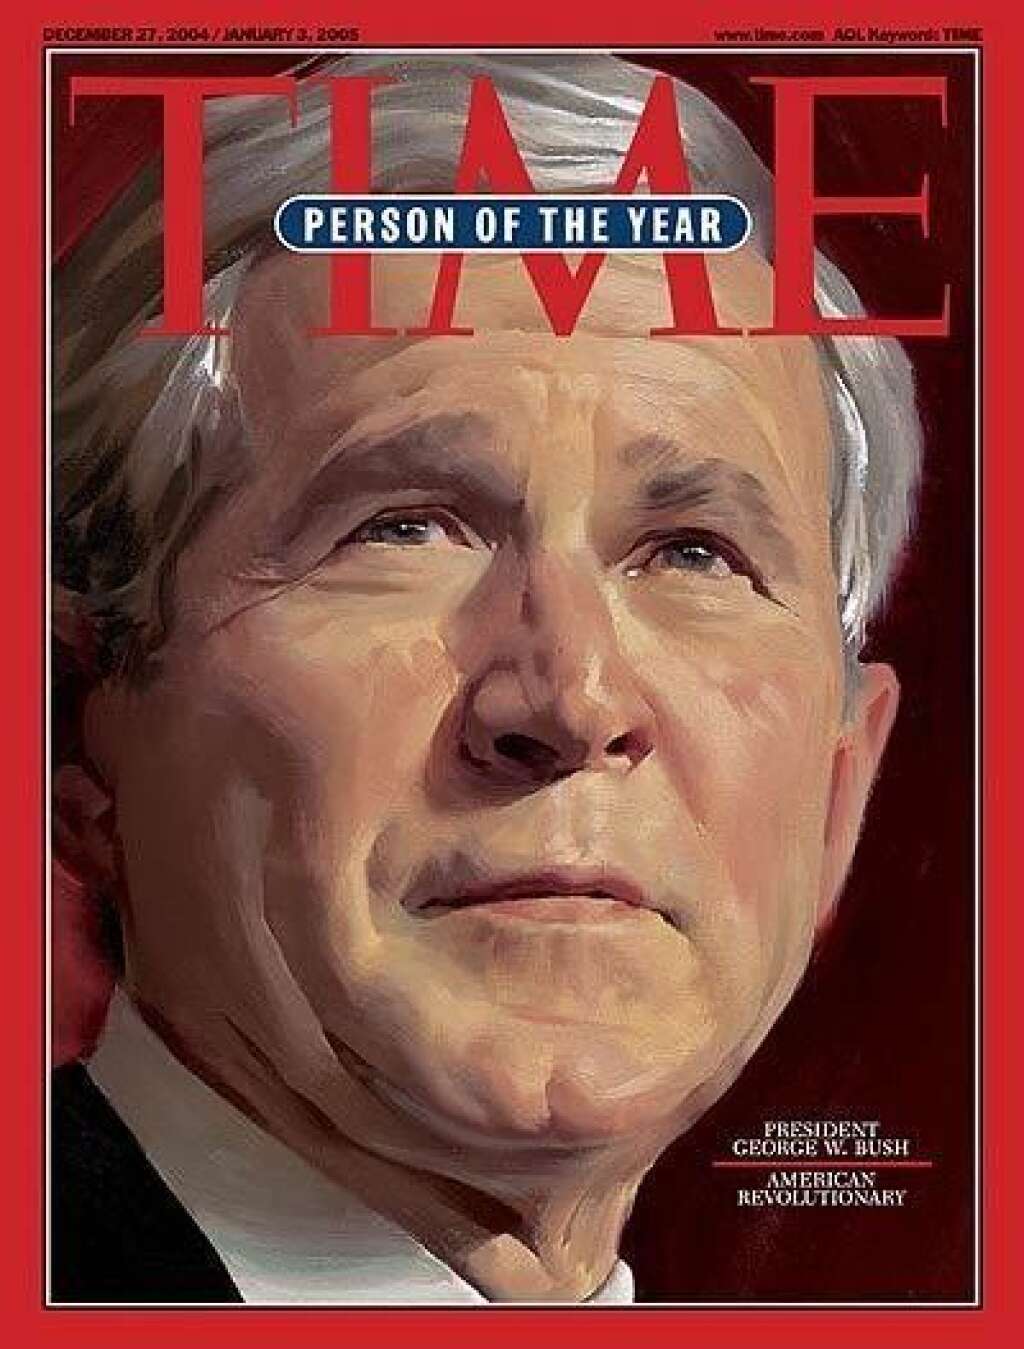 2004 - George W. Bush -